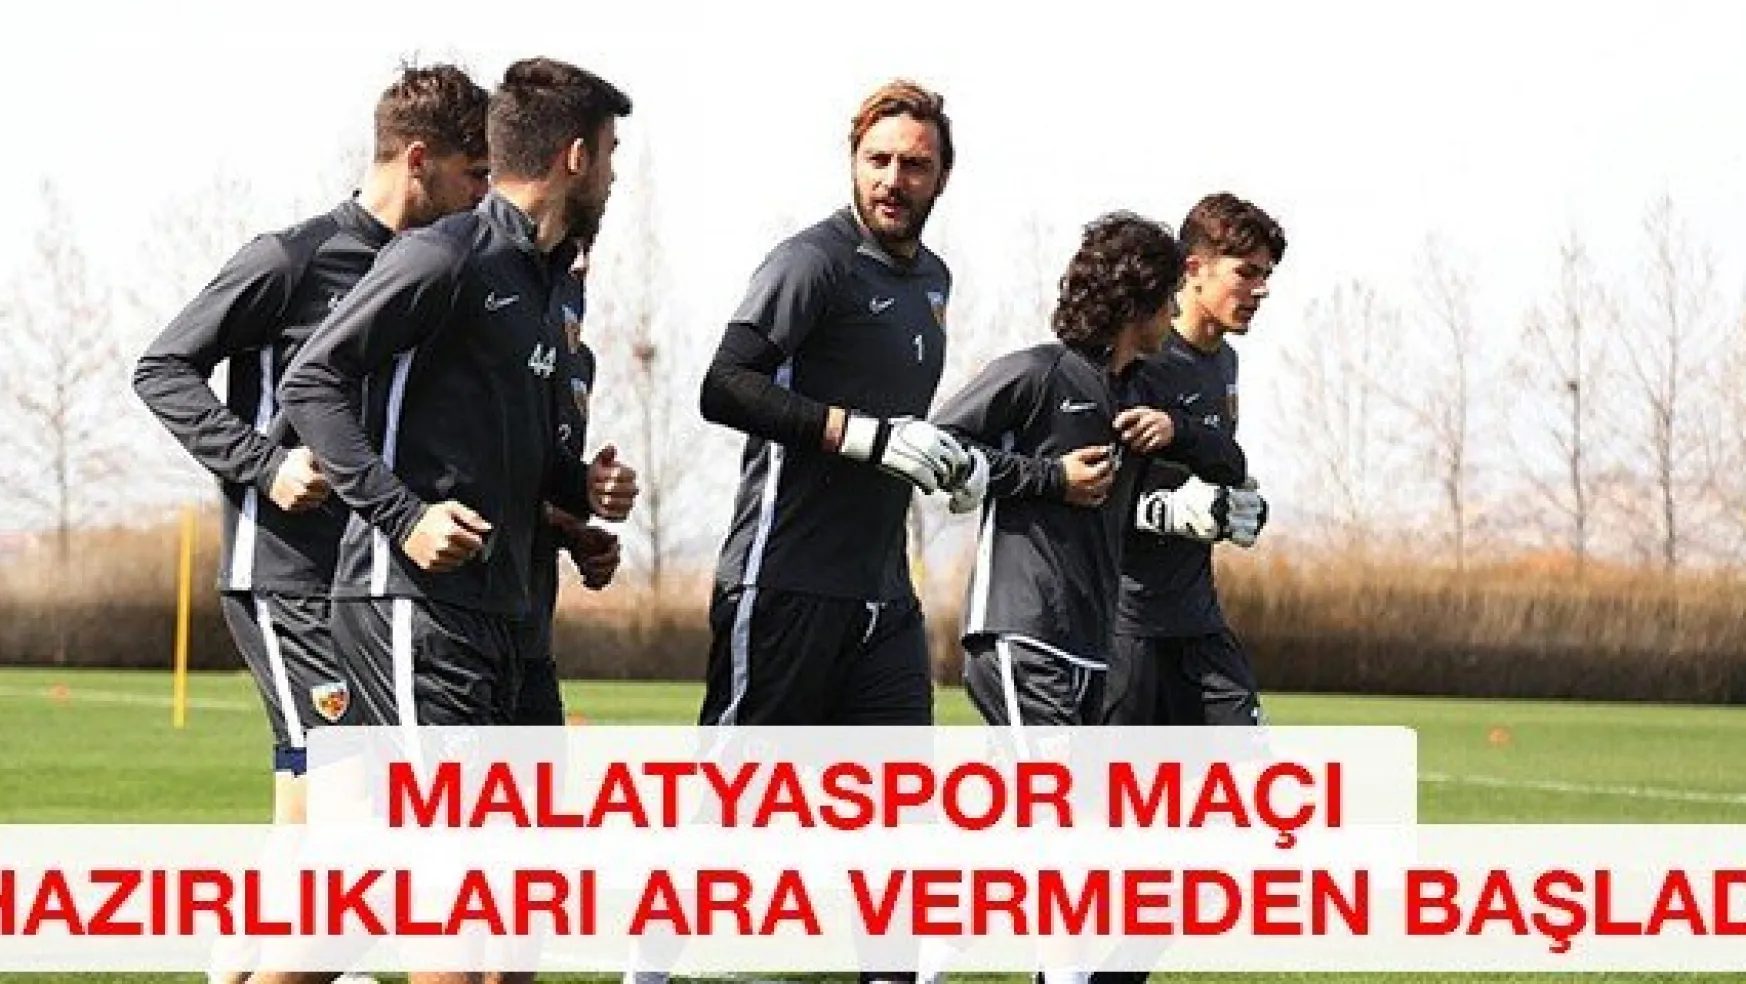 Malatyaspor maçı hazırlıkları ara vermeden başladı